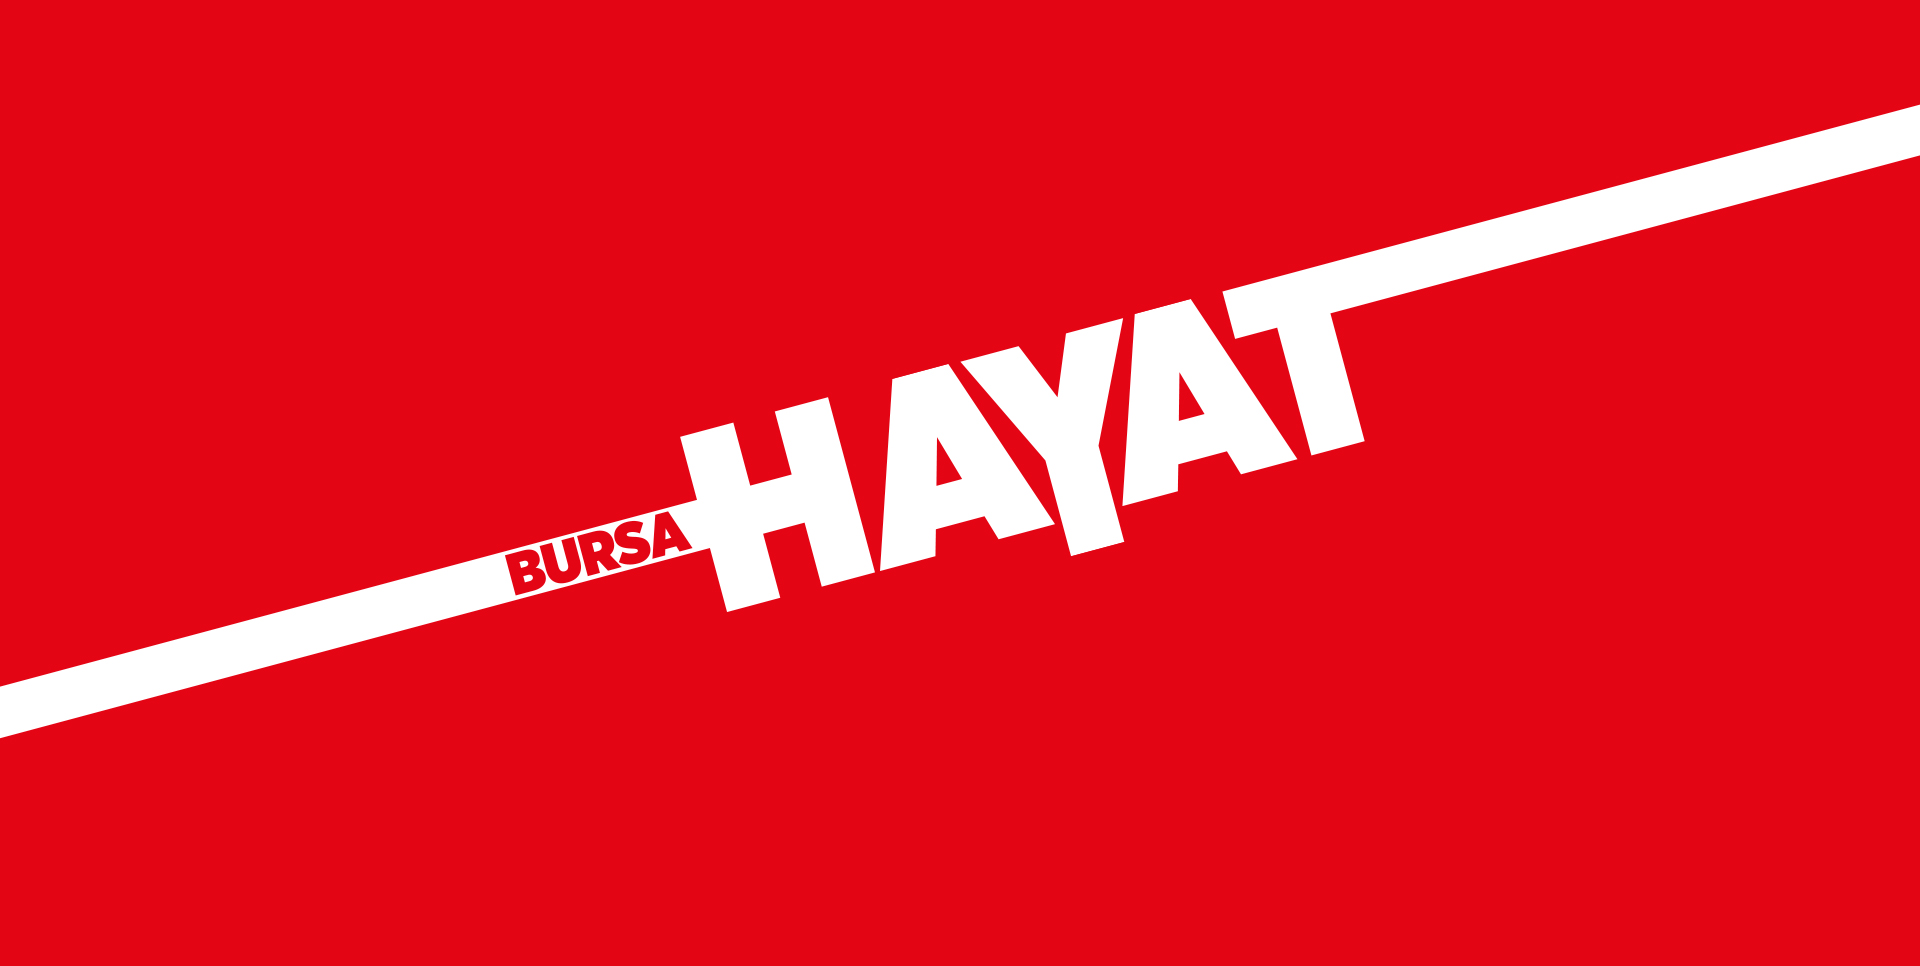 Bursa Hayat Gazetesi Logo Tasarımı - Reklam Ajansı İstanbul